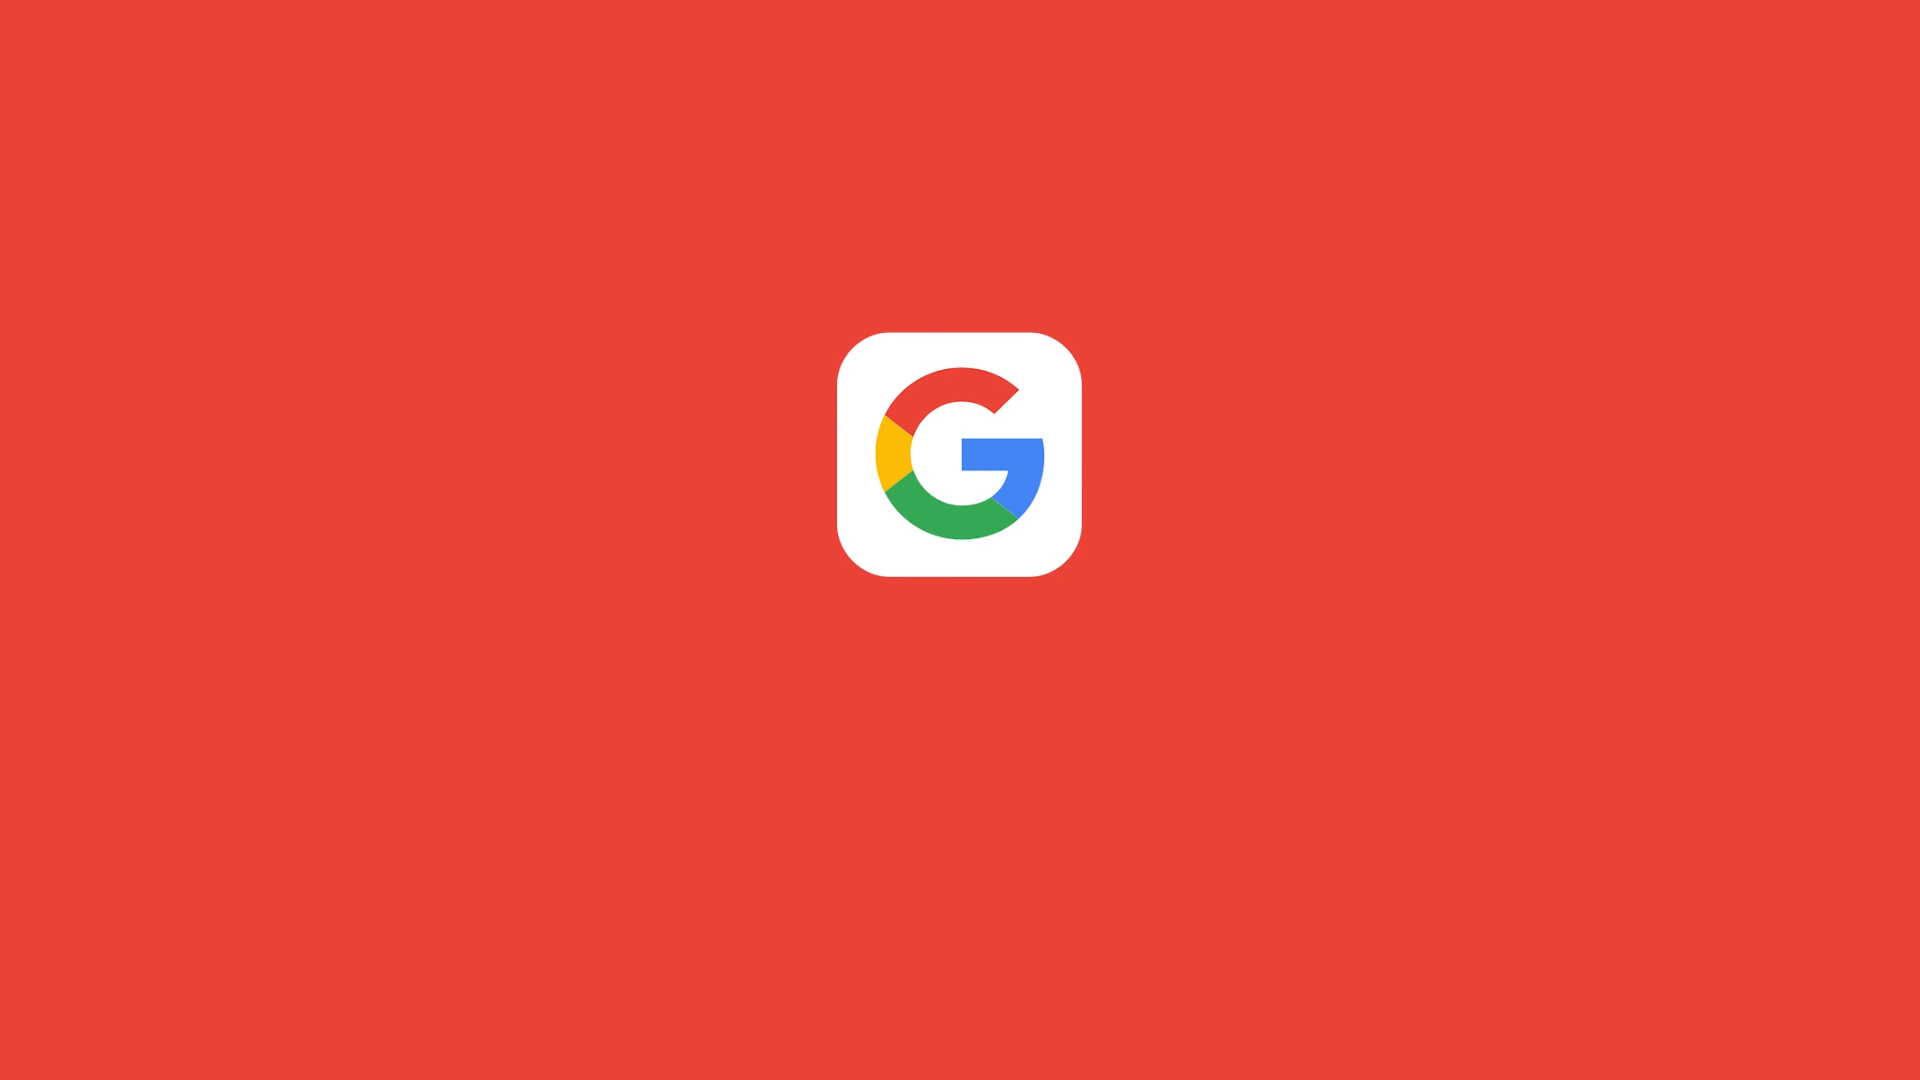 google-logo-fondo-rojo-youtu-be-ejtbz9-upos